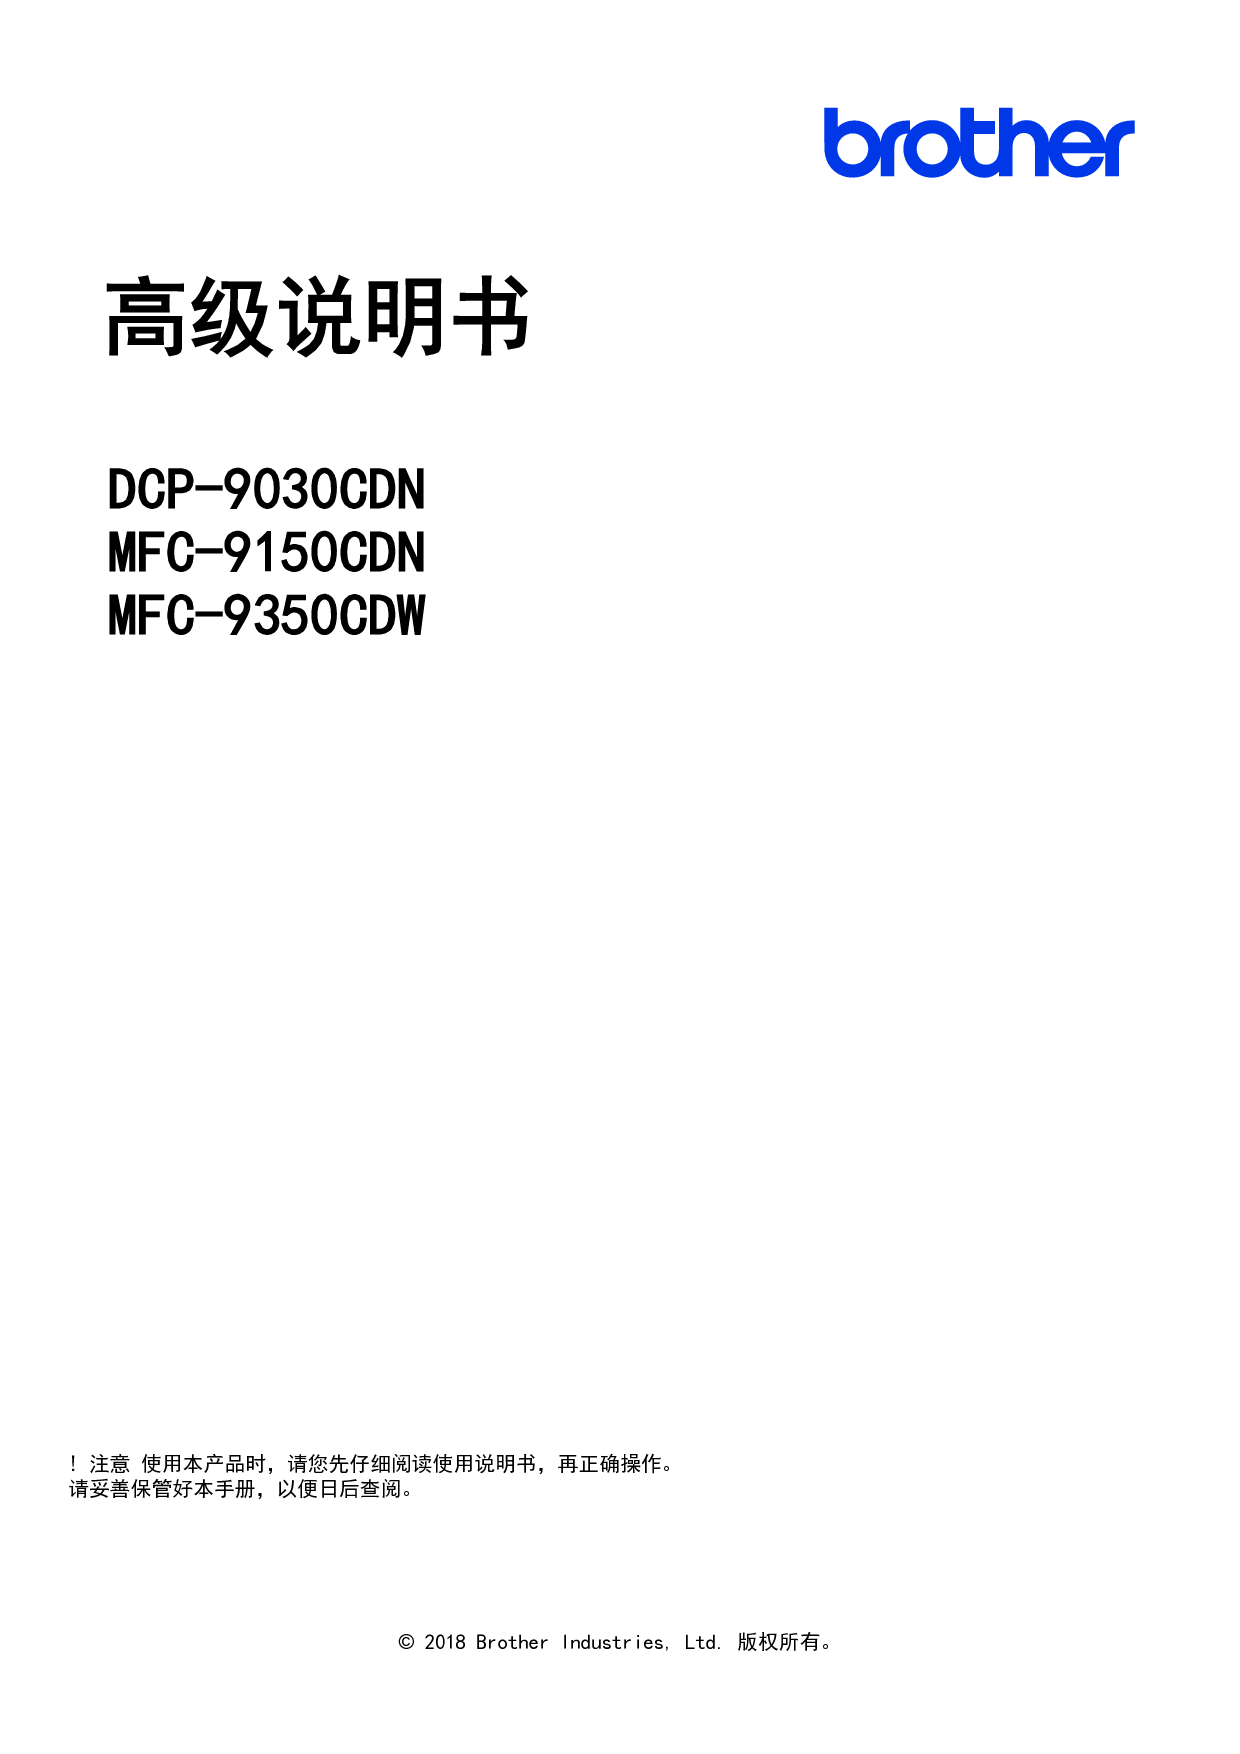 兄弟 Brother DCP-9030CDN, MFC-9150CDN 高级使用说明书 封面